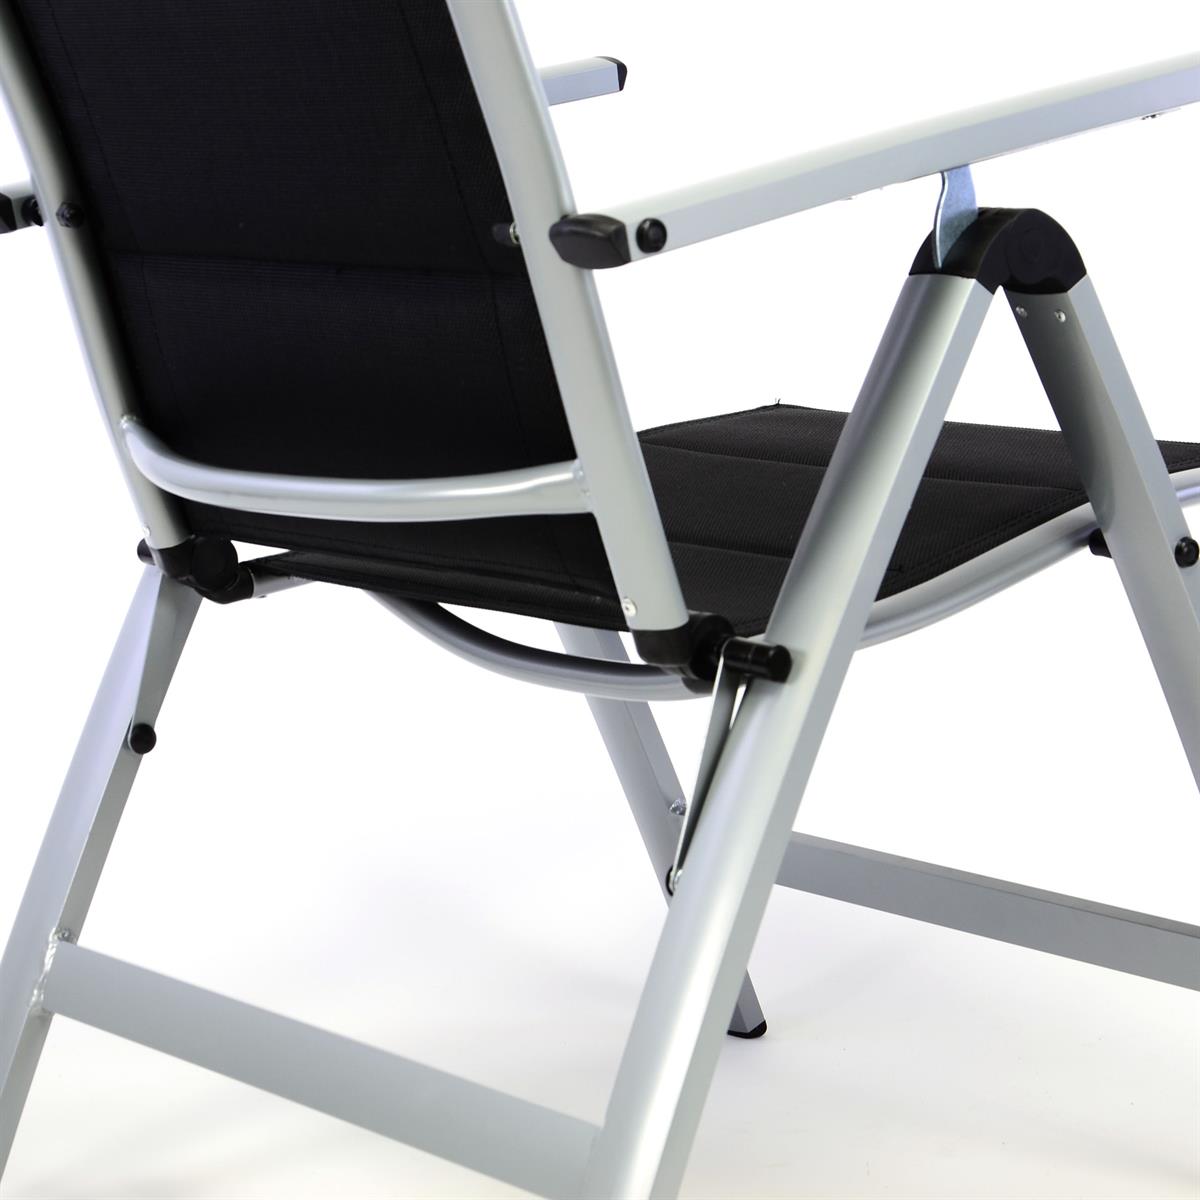 Стул складной алюминиевый. Кресло складное Медина текстилен. Lometa кресло складное из текстилена 60х113х59. Стул раскладной алюминиевый. Складные алюминиевые стулья.